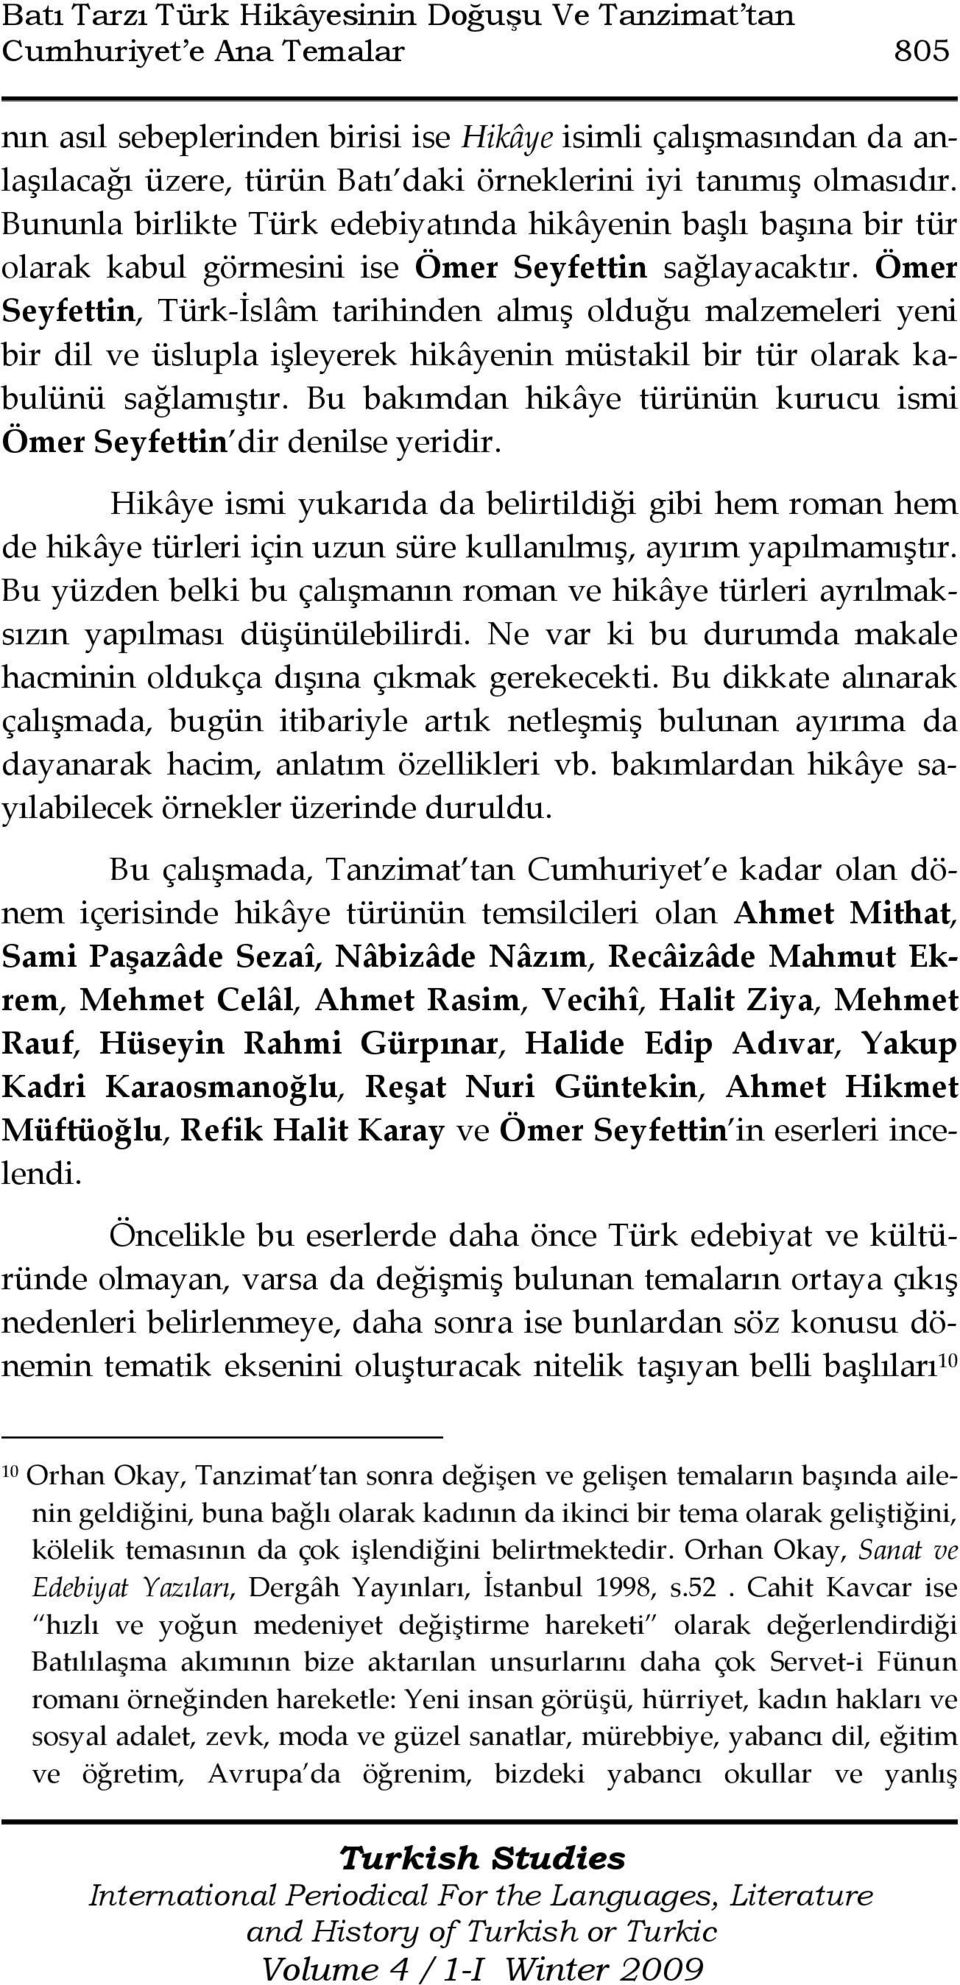 Ömer Seyfettin, Türk-İslâm tarihinden almış olduğu malzemeleri yeni bir dil ve üslupla işleyerek hikâyenin müstakil bir tür olarak kabulünü sağlamıştır.